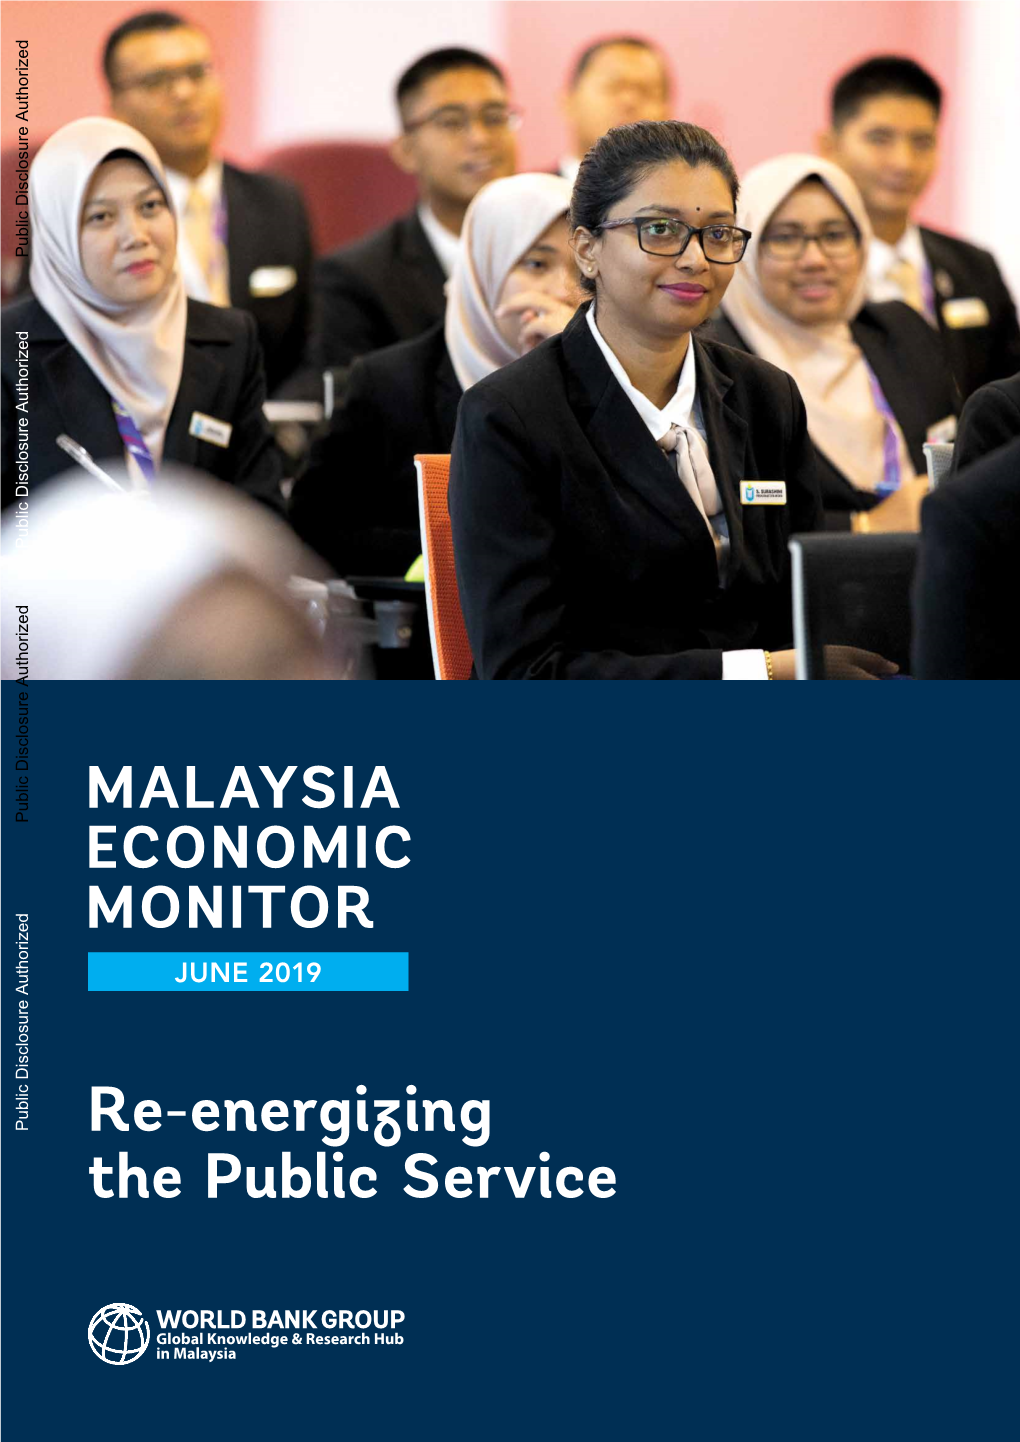 Malaysia Economic Monitor June 2019